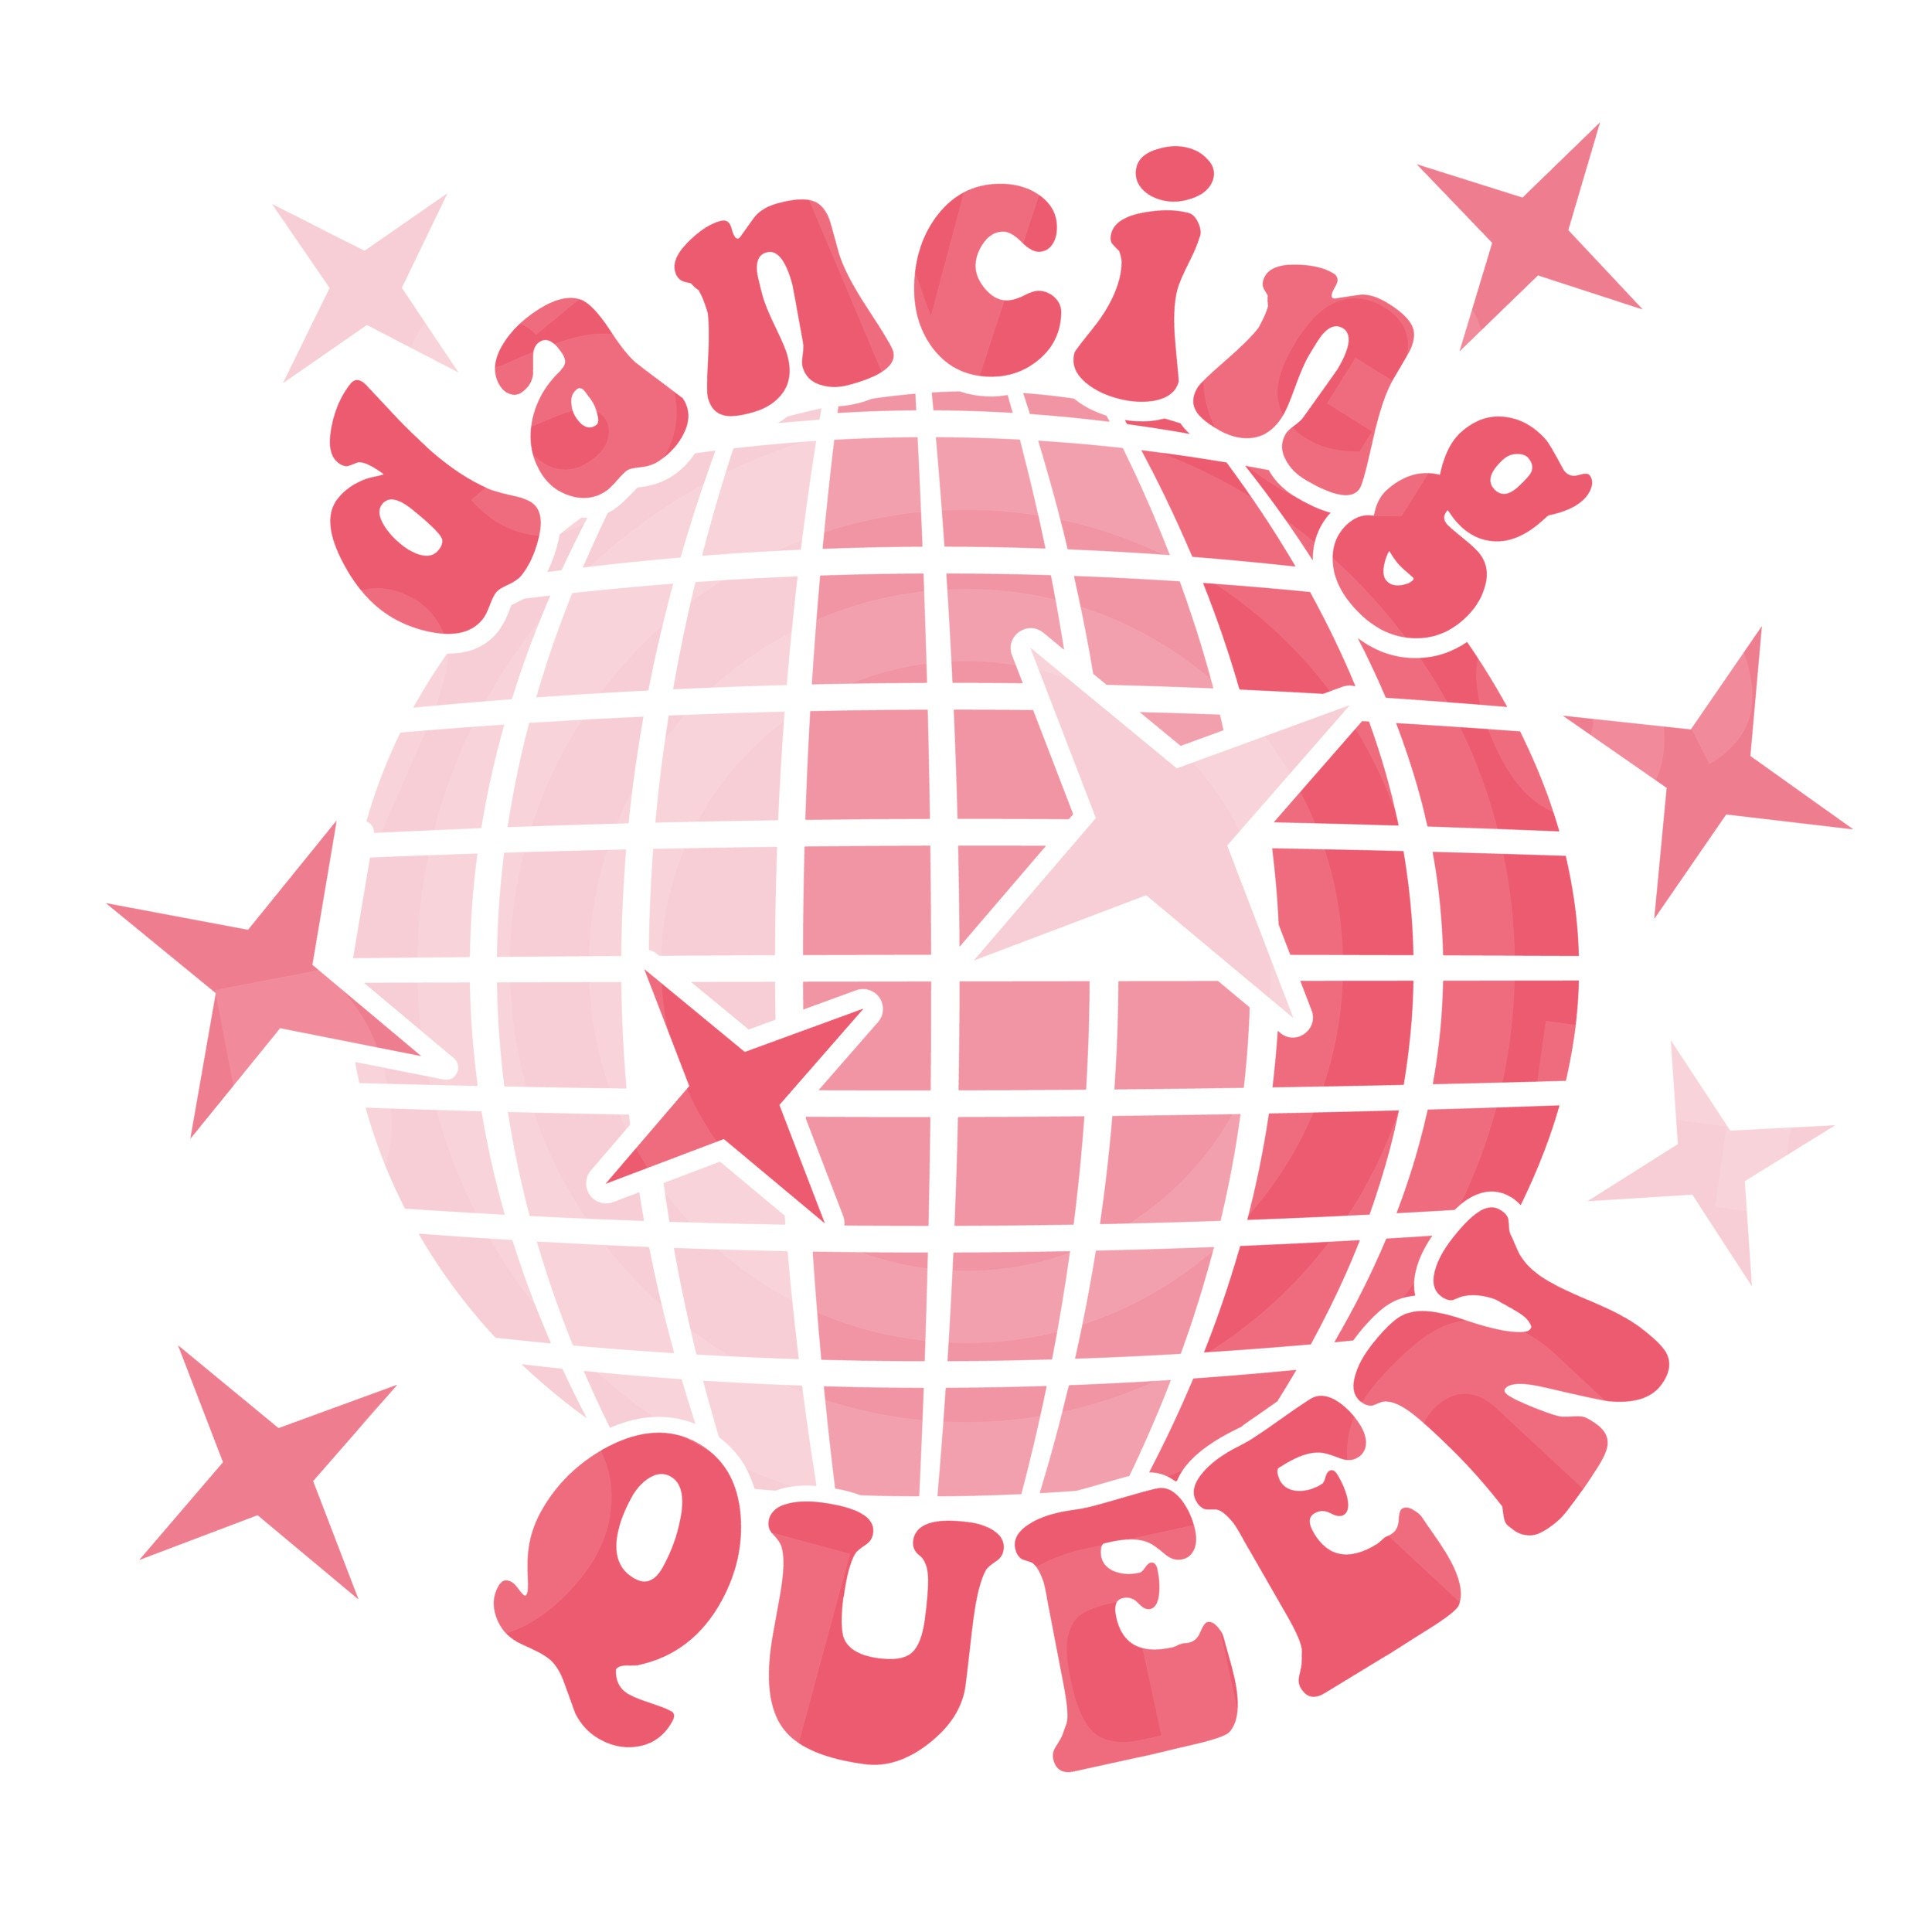 Queen Dances At Ball